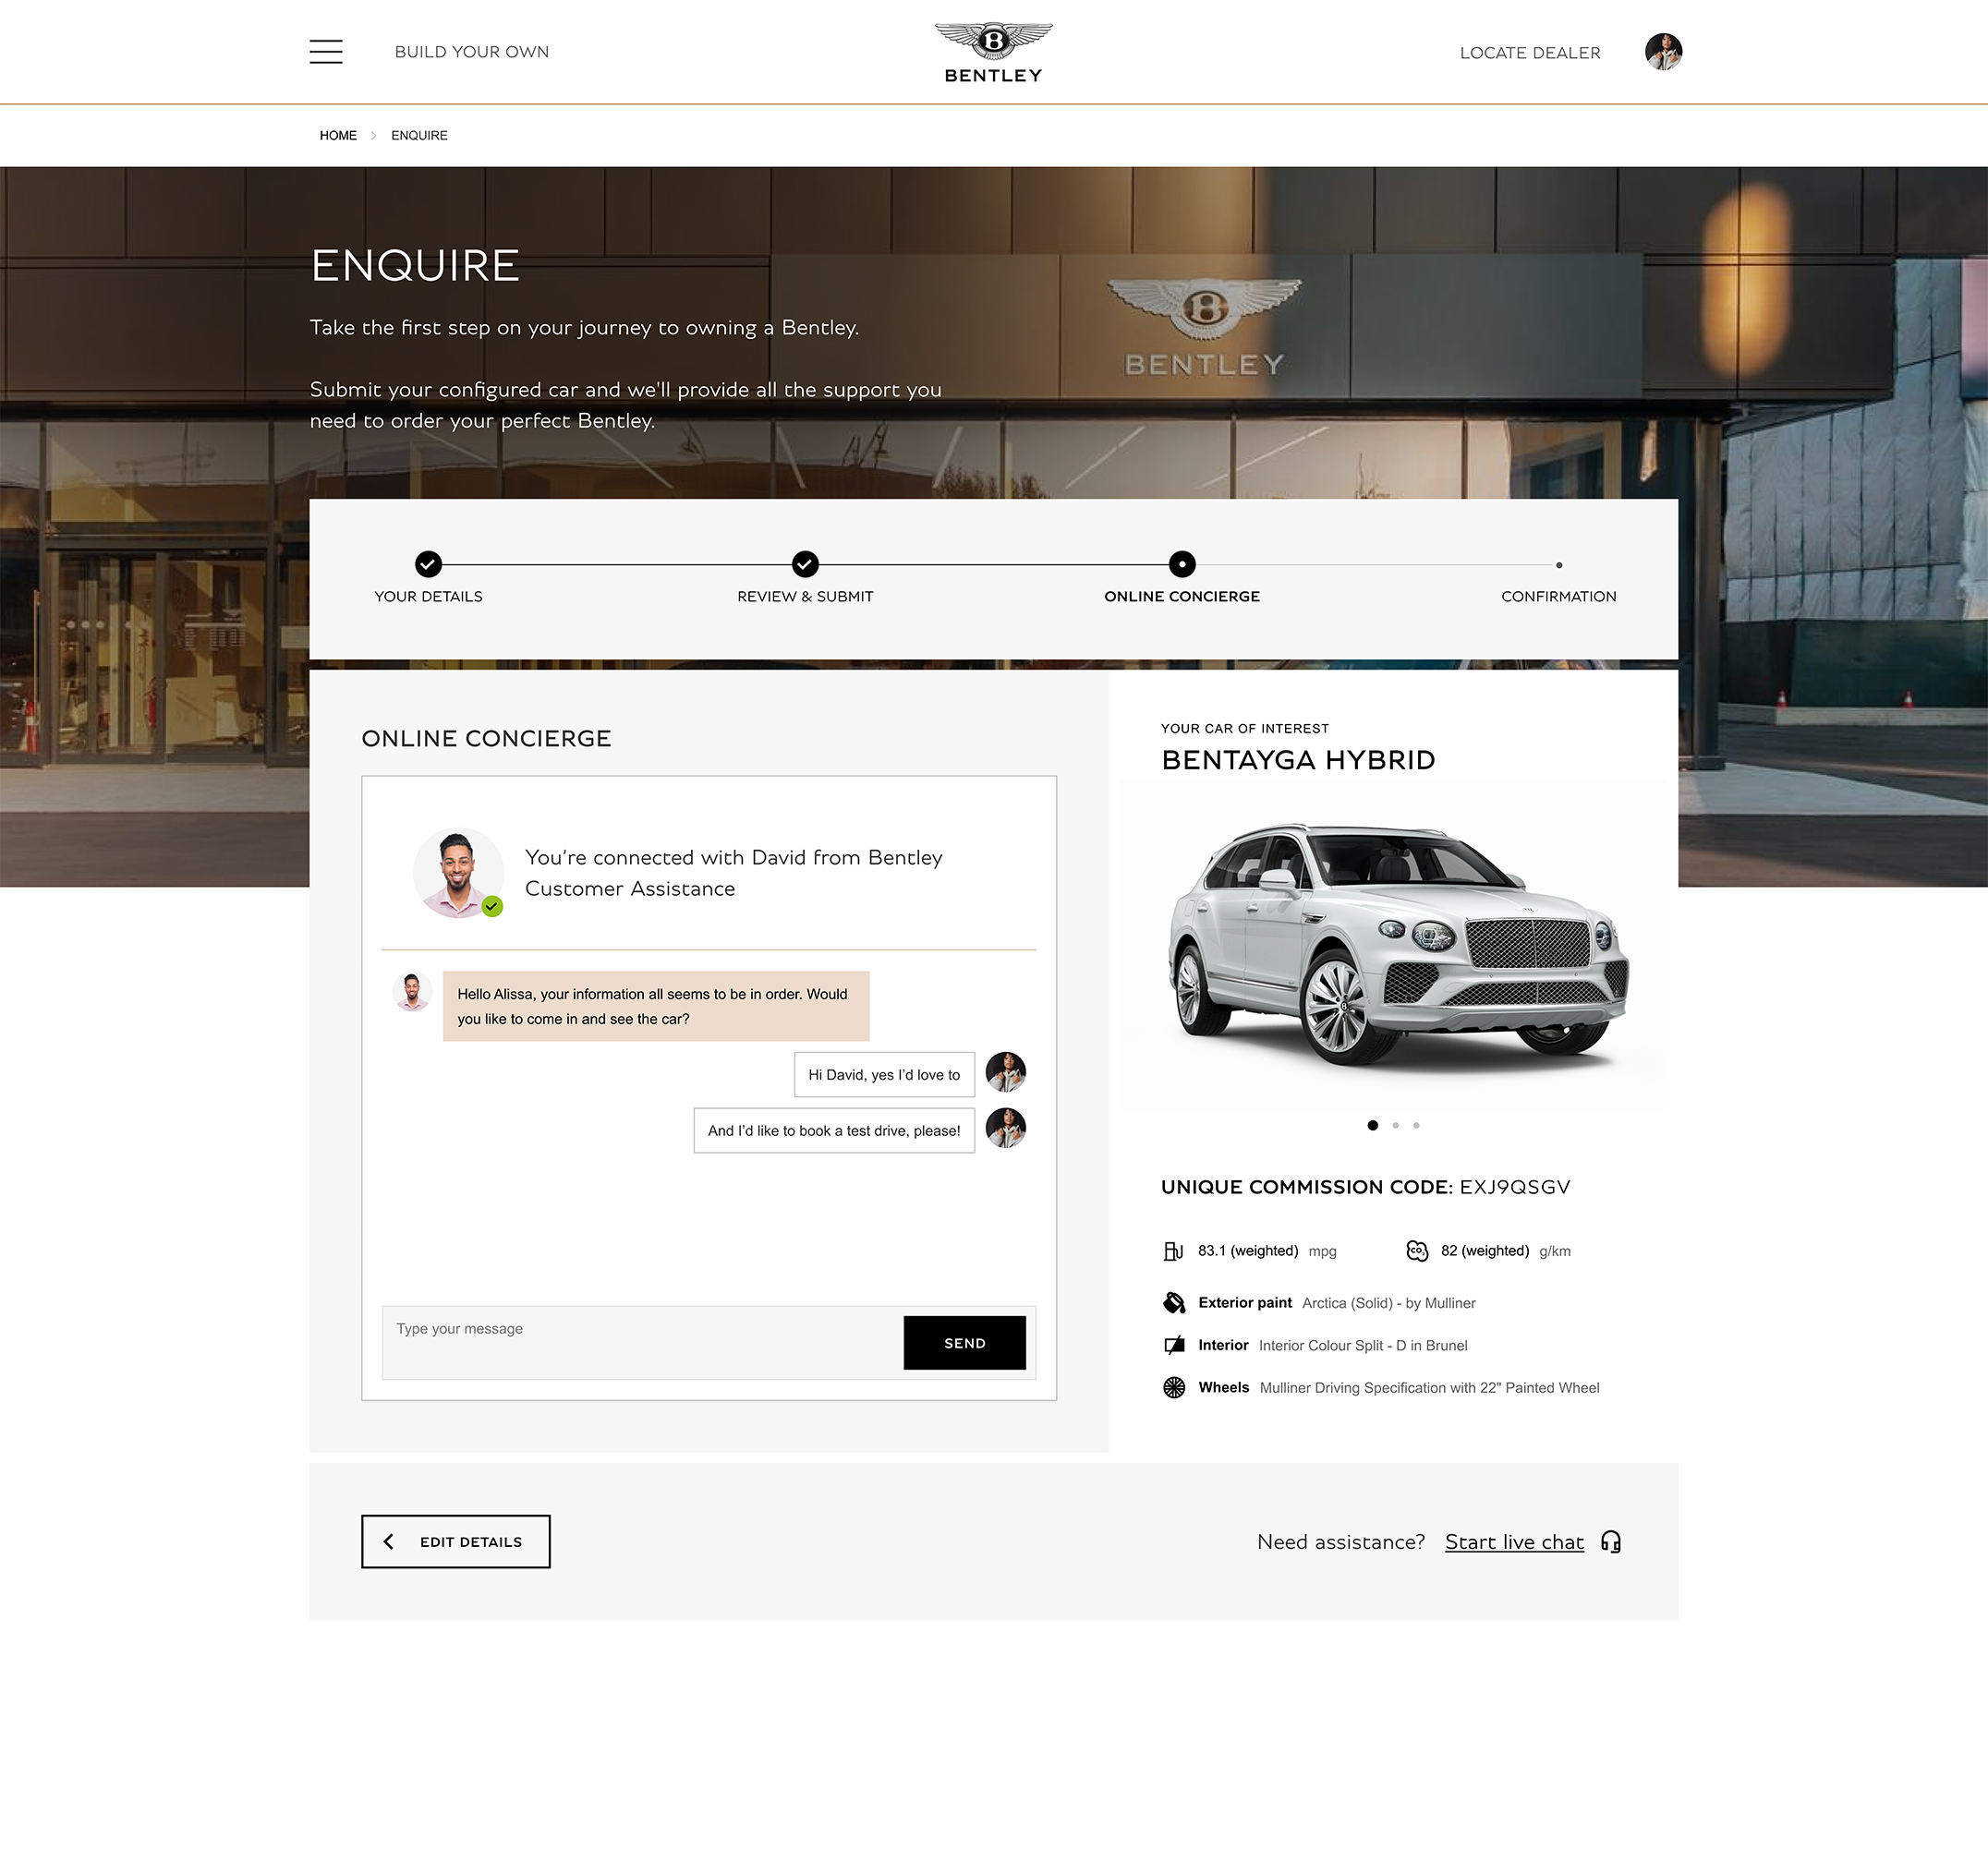 Bentley Motors website large-screen UI